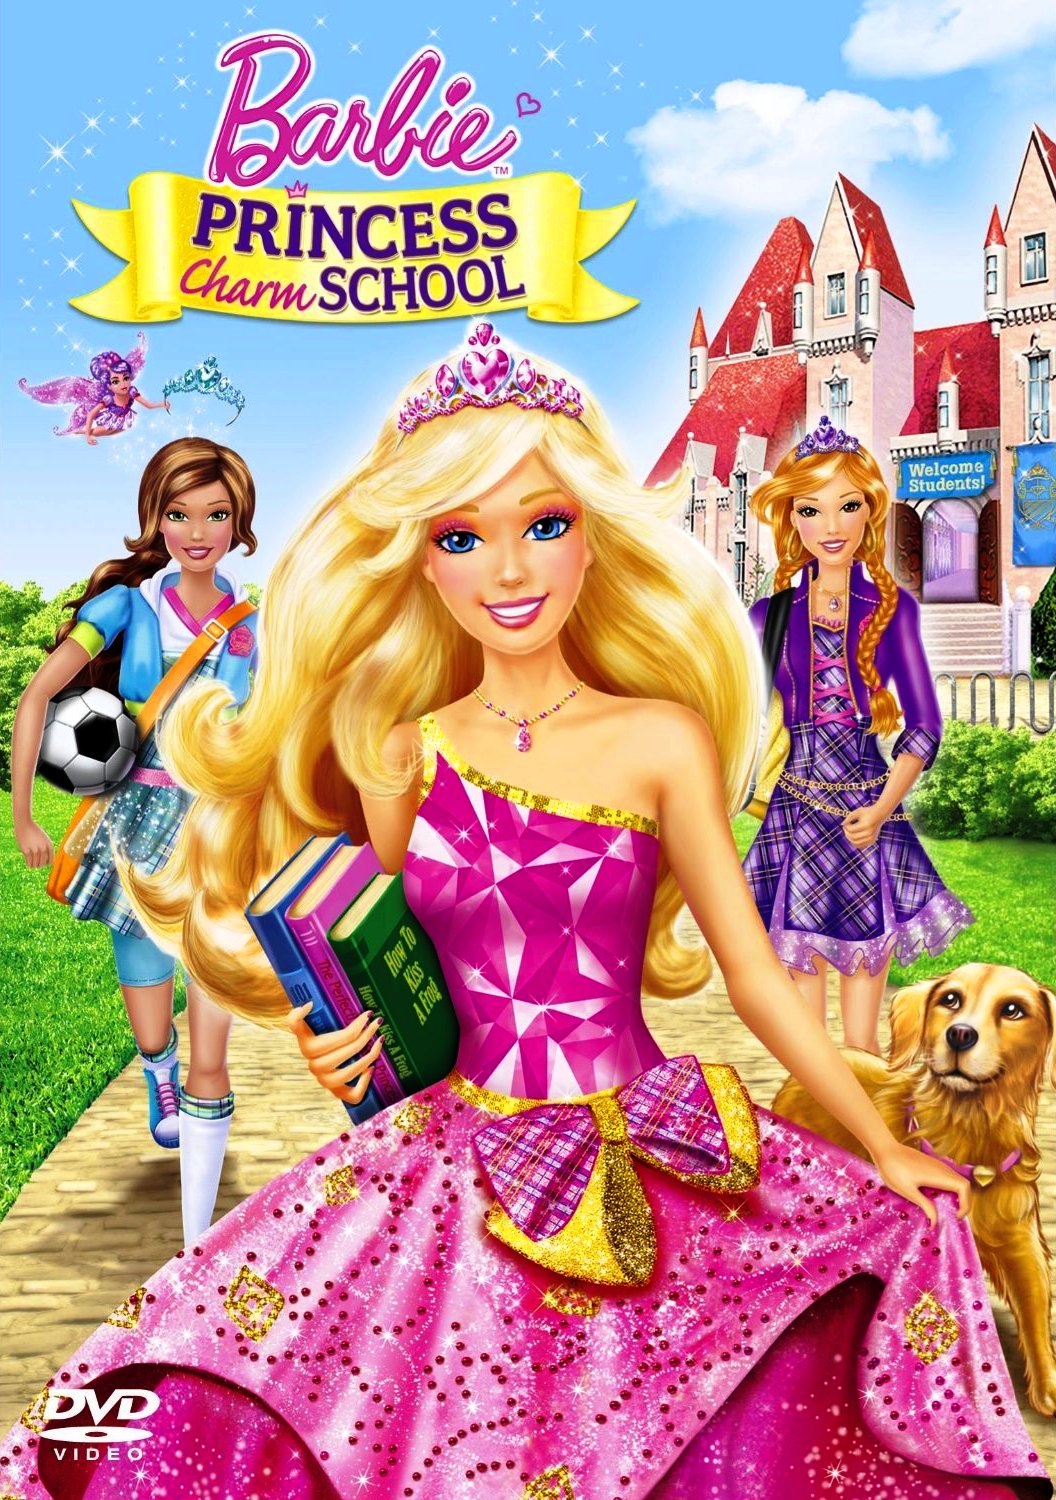 Barbie Movies Online In Hindi